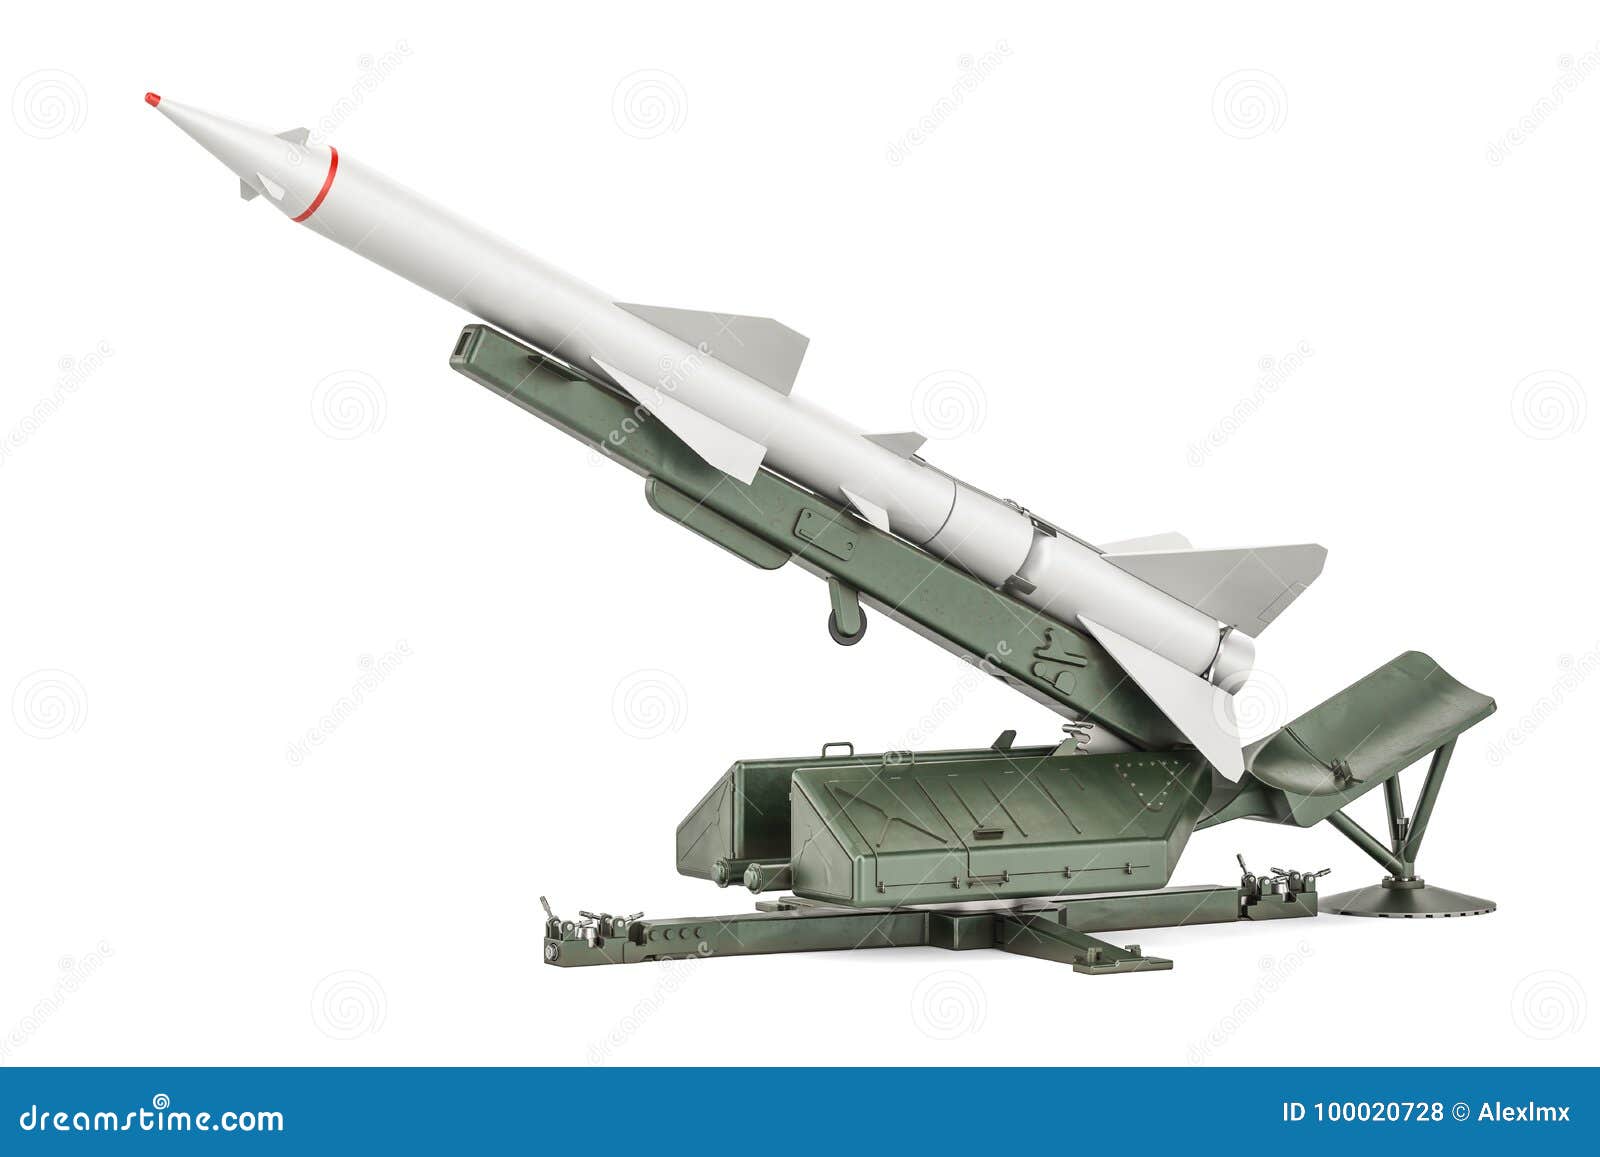 missile defence system, 3d rendering